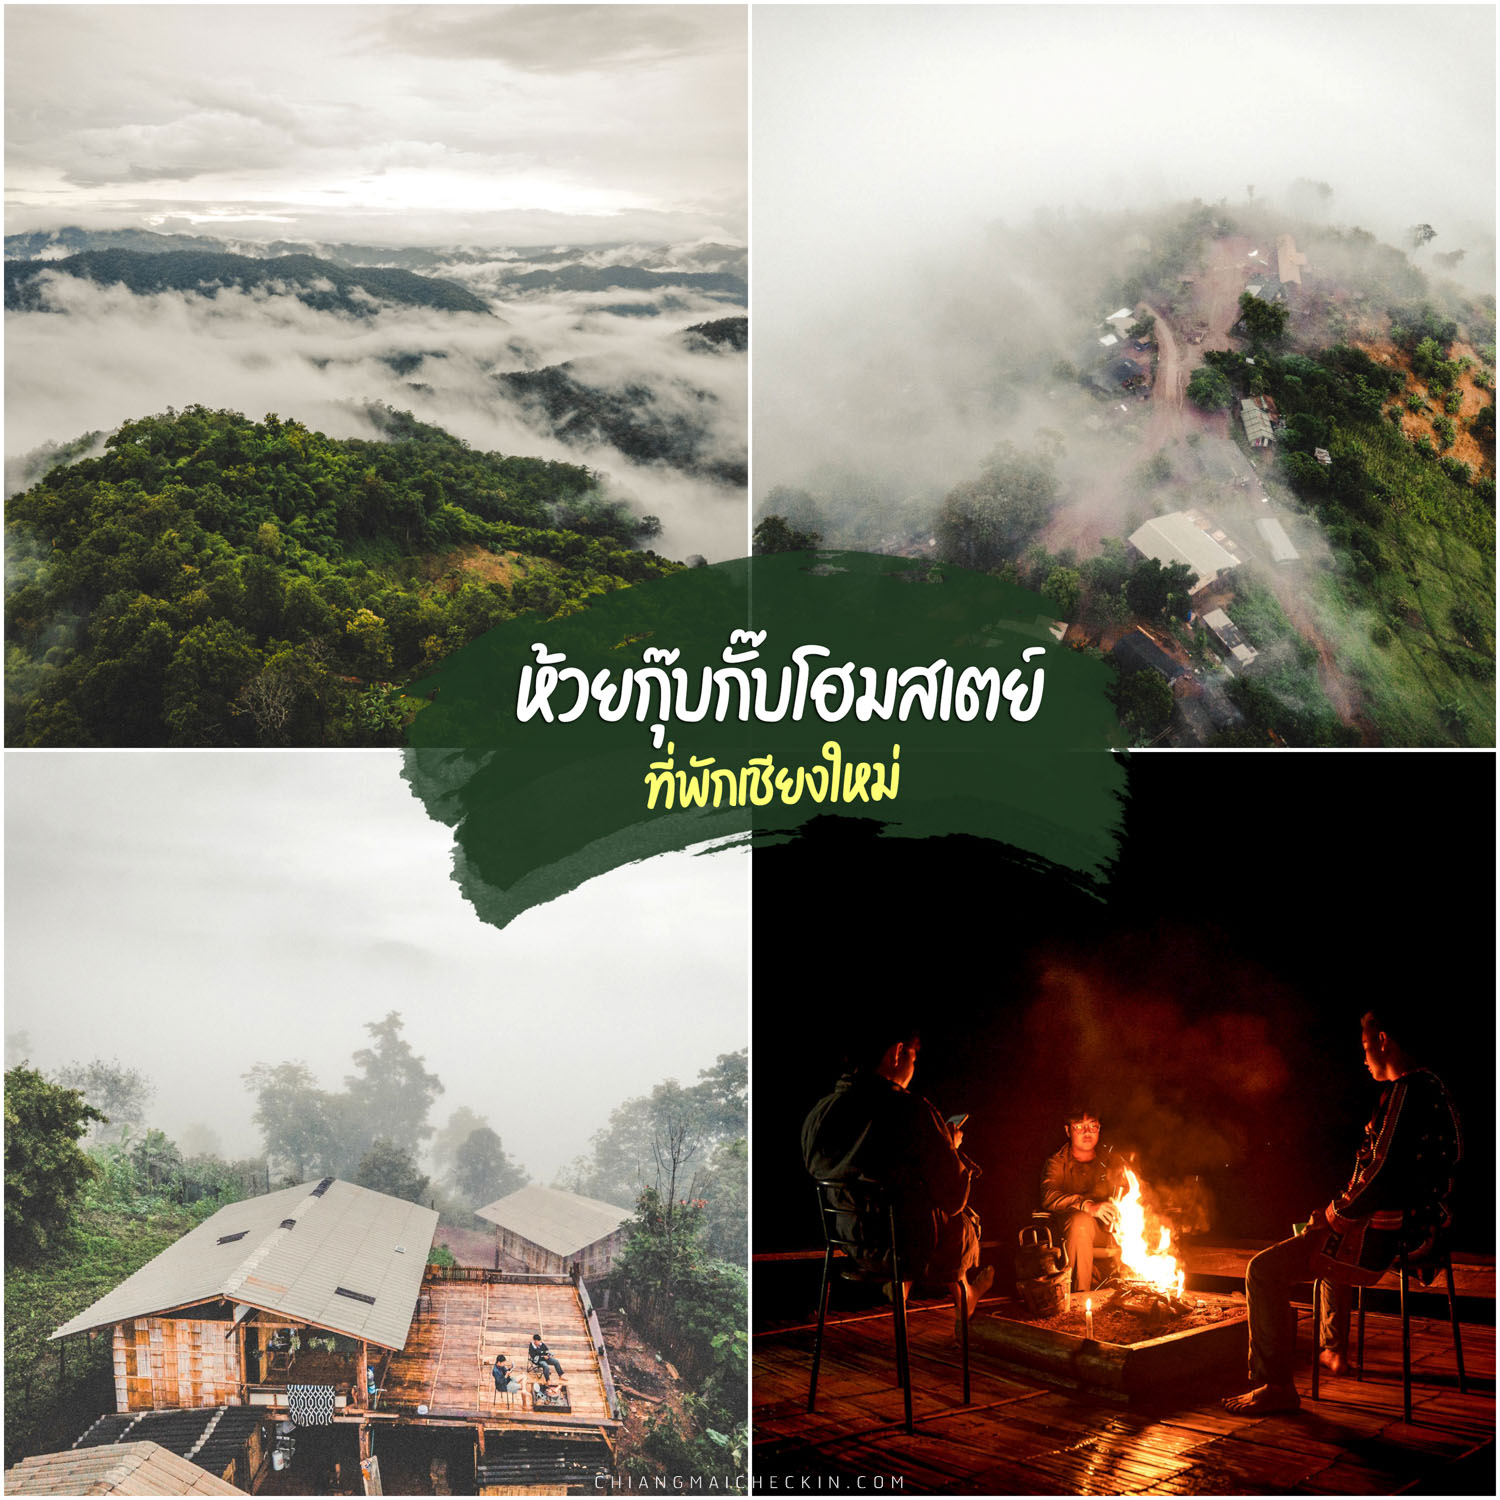 Huai Kup Kab Homestay, Mae Taeng, размещение в Чиангмае, спите и смотрите на звезды, проживание в семье, окруженное морем тумана и горами, необыкновенно красивое.